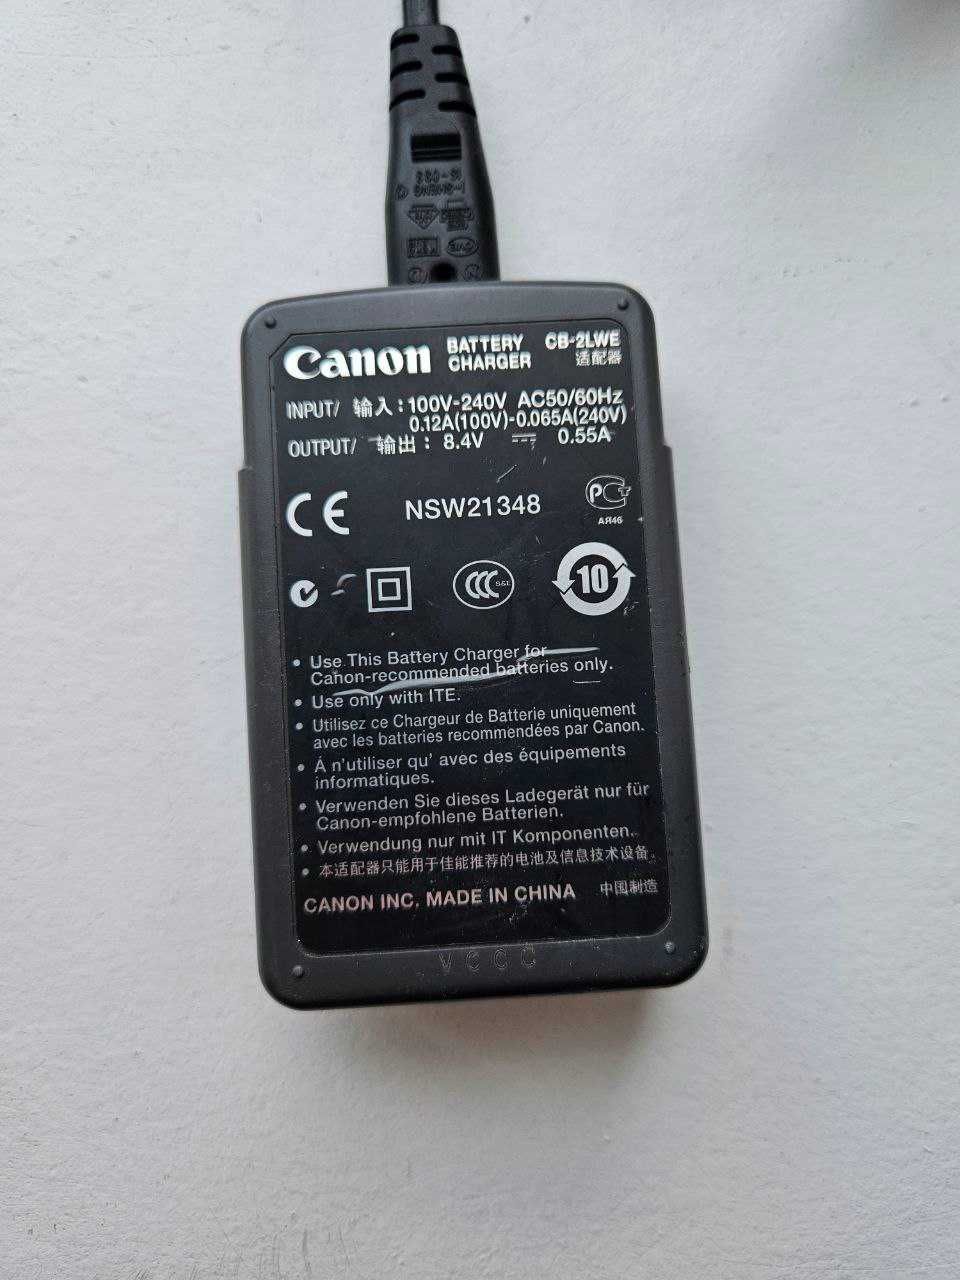 Зарядний пристрій до фотоапарата Canon CB-2LWE   EOS 350D, EOS 400D.